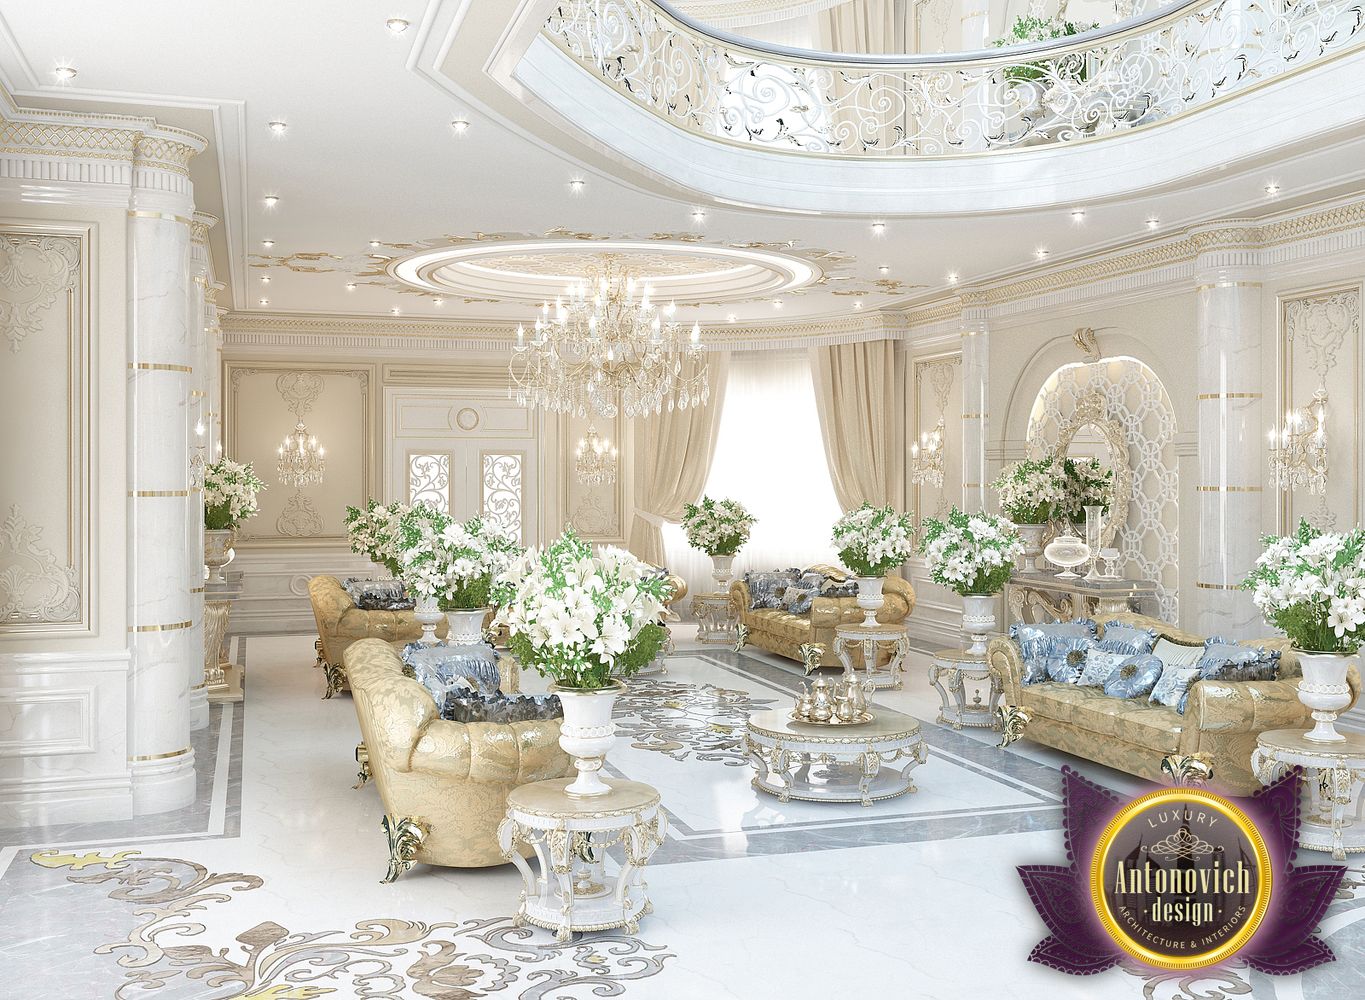 LUXURY ANTONOVICH DESIGN UAE: Design art masterpiece of Luxury ...